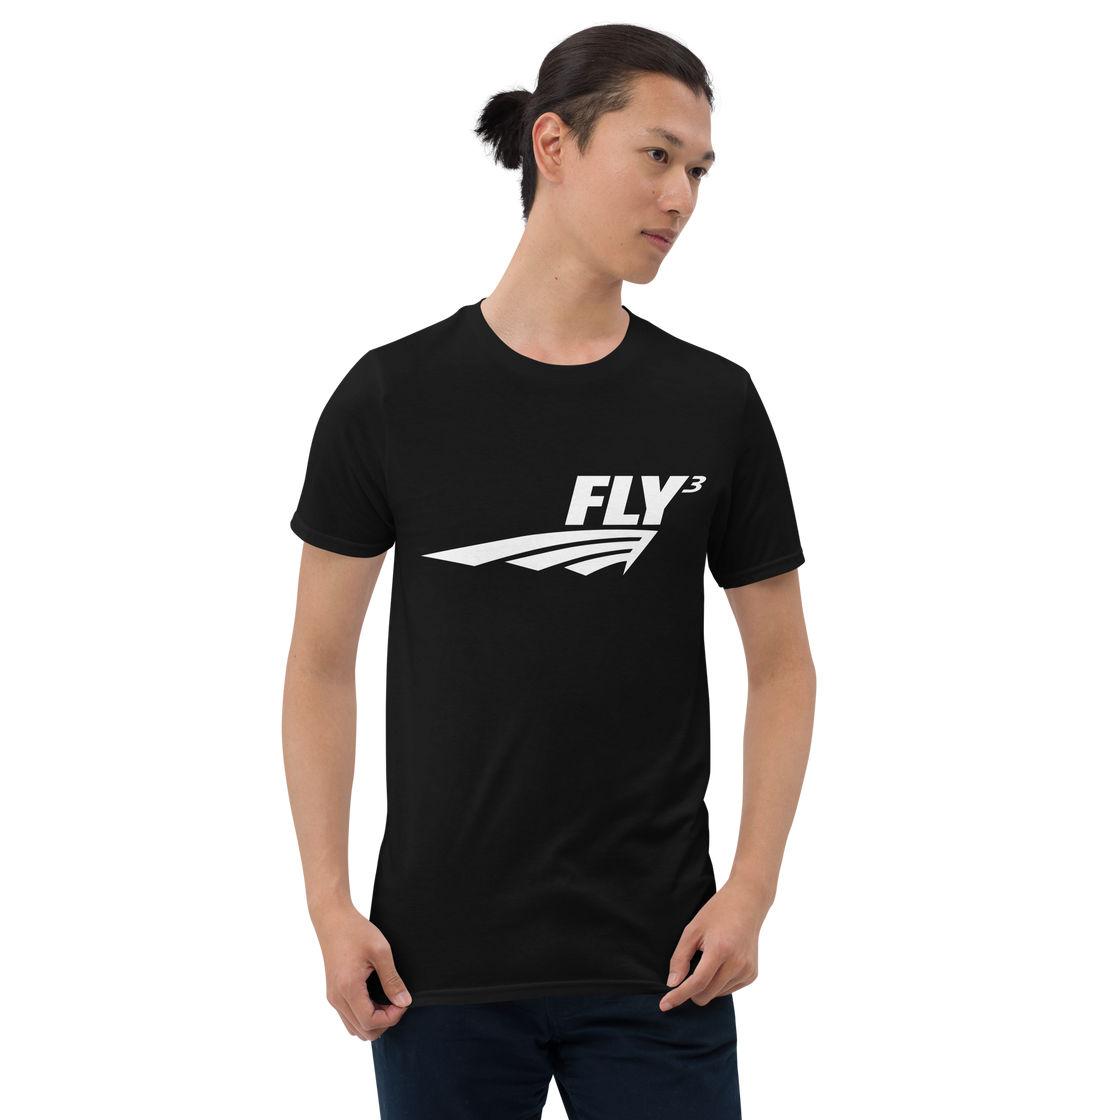 FLY³ Premium Tee | Flycube